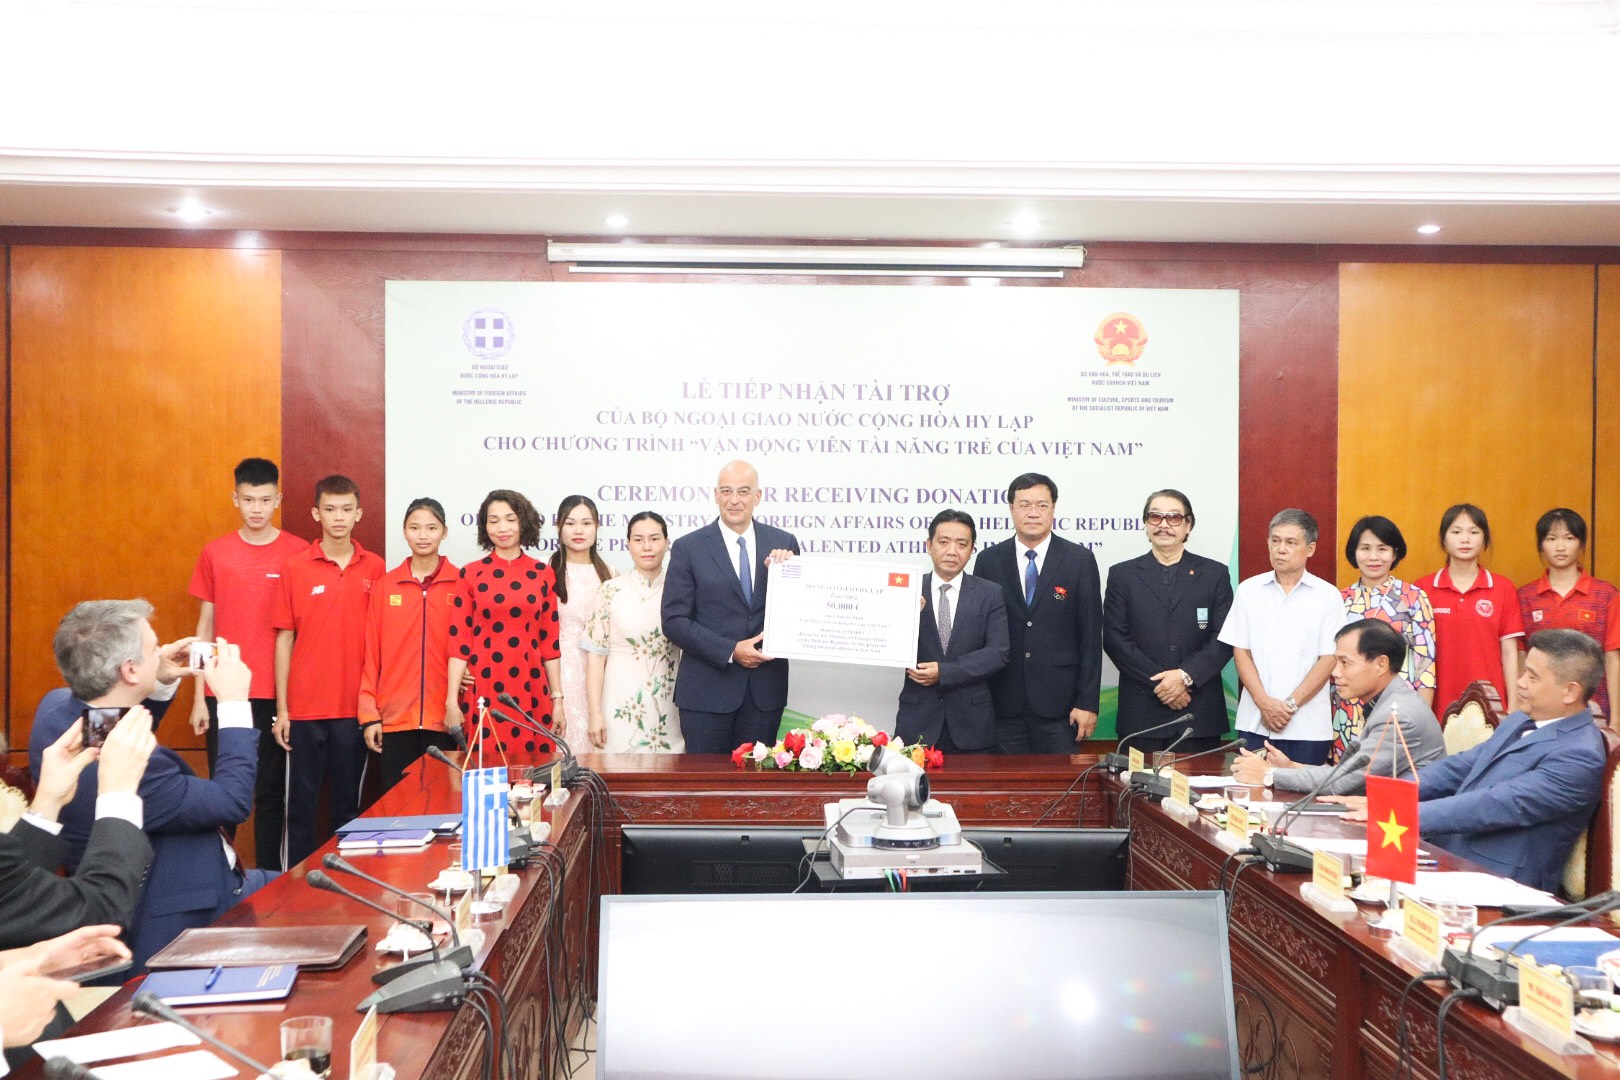 Thứ trưởng Hoàng Đạo Cương dự lễ tiếp nhận tài trợ của Hy Lạp cho ngành thể thao Việt Nam - Ảnh 3.